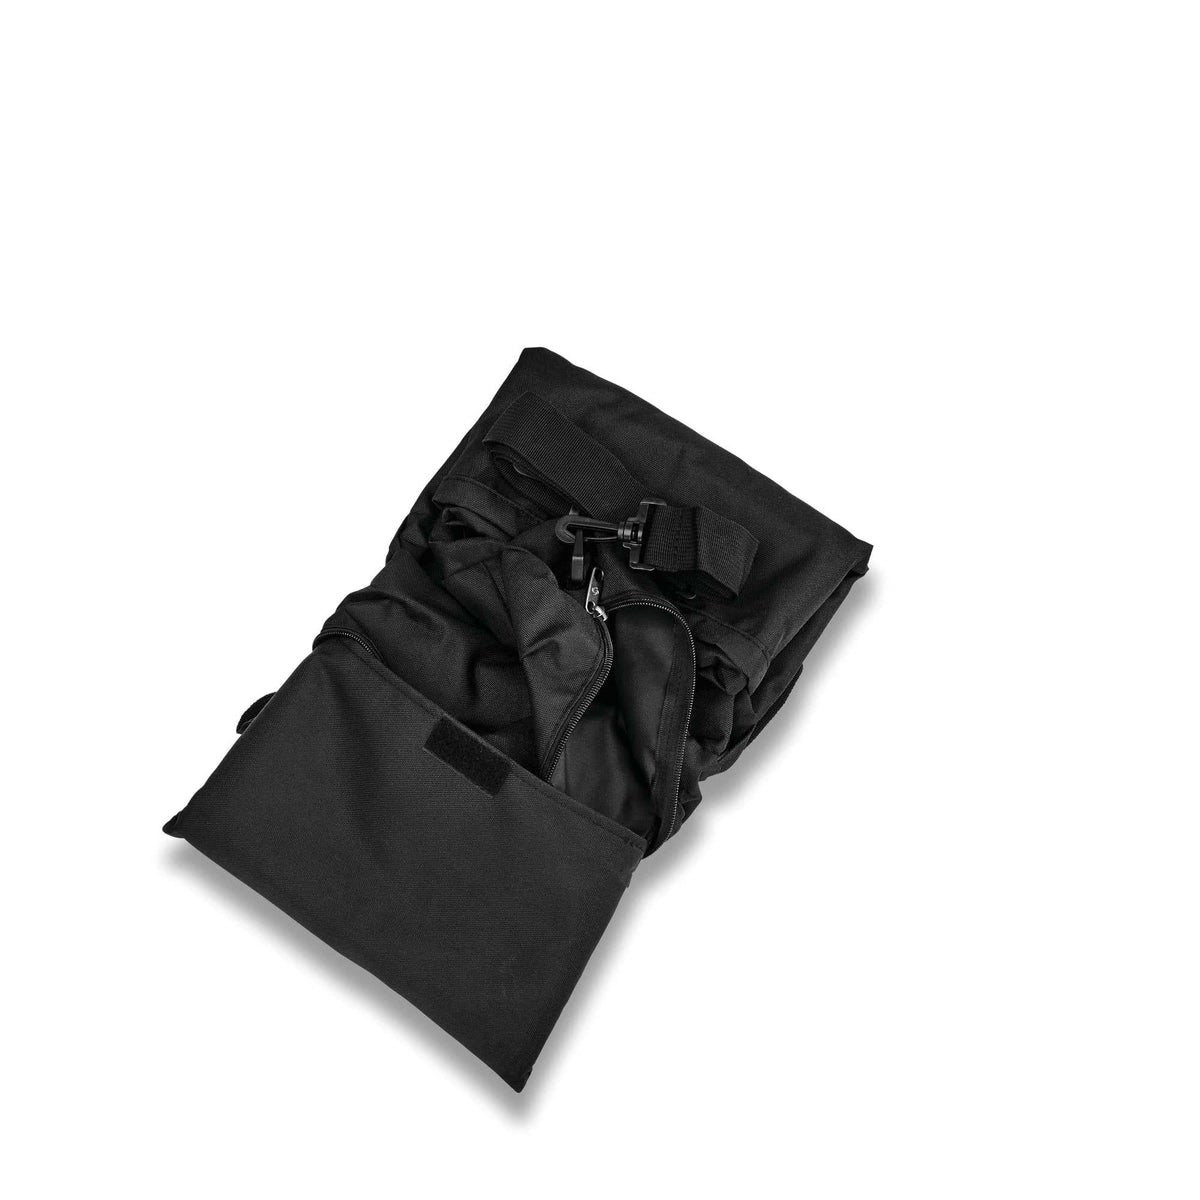 Samsonite Foldaway Packable Duffle Bag